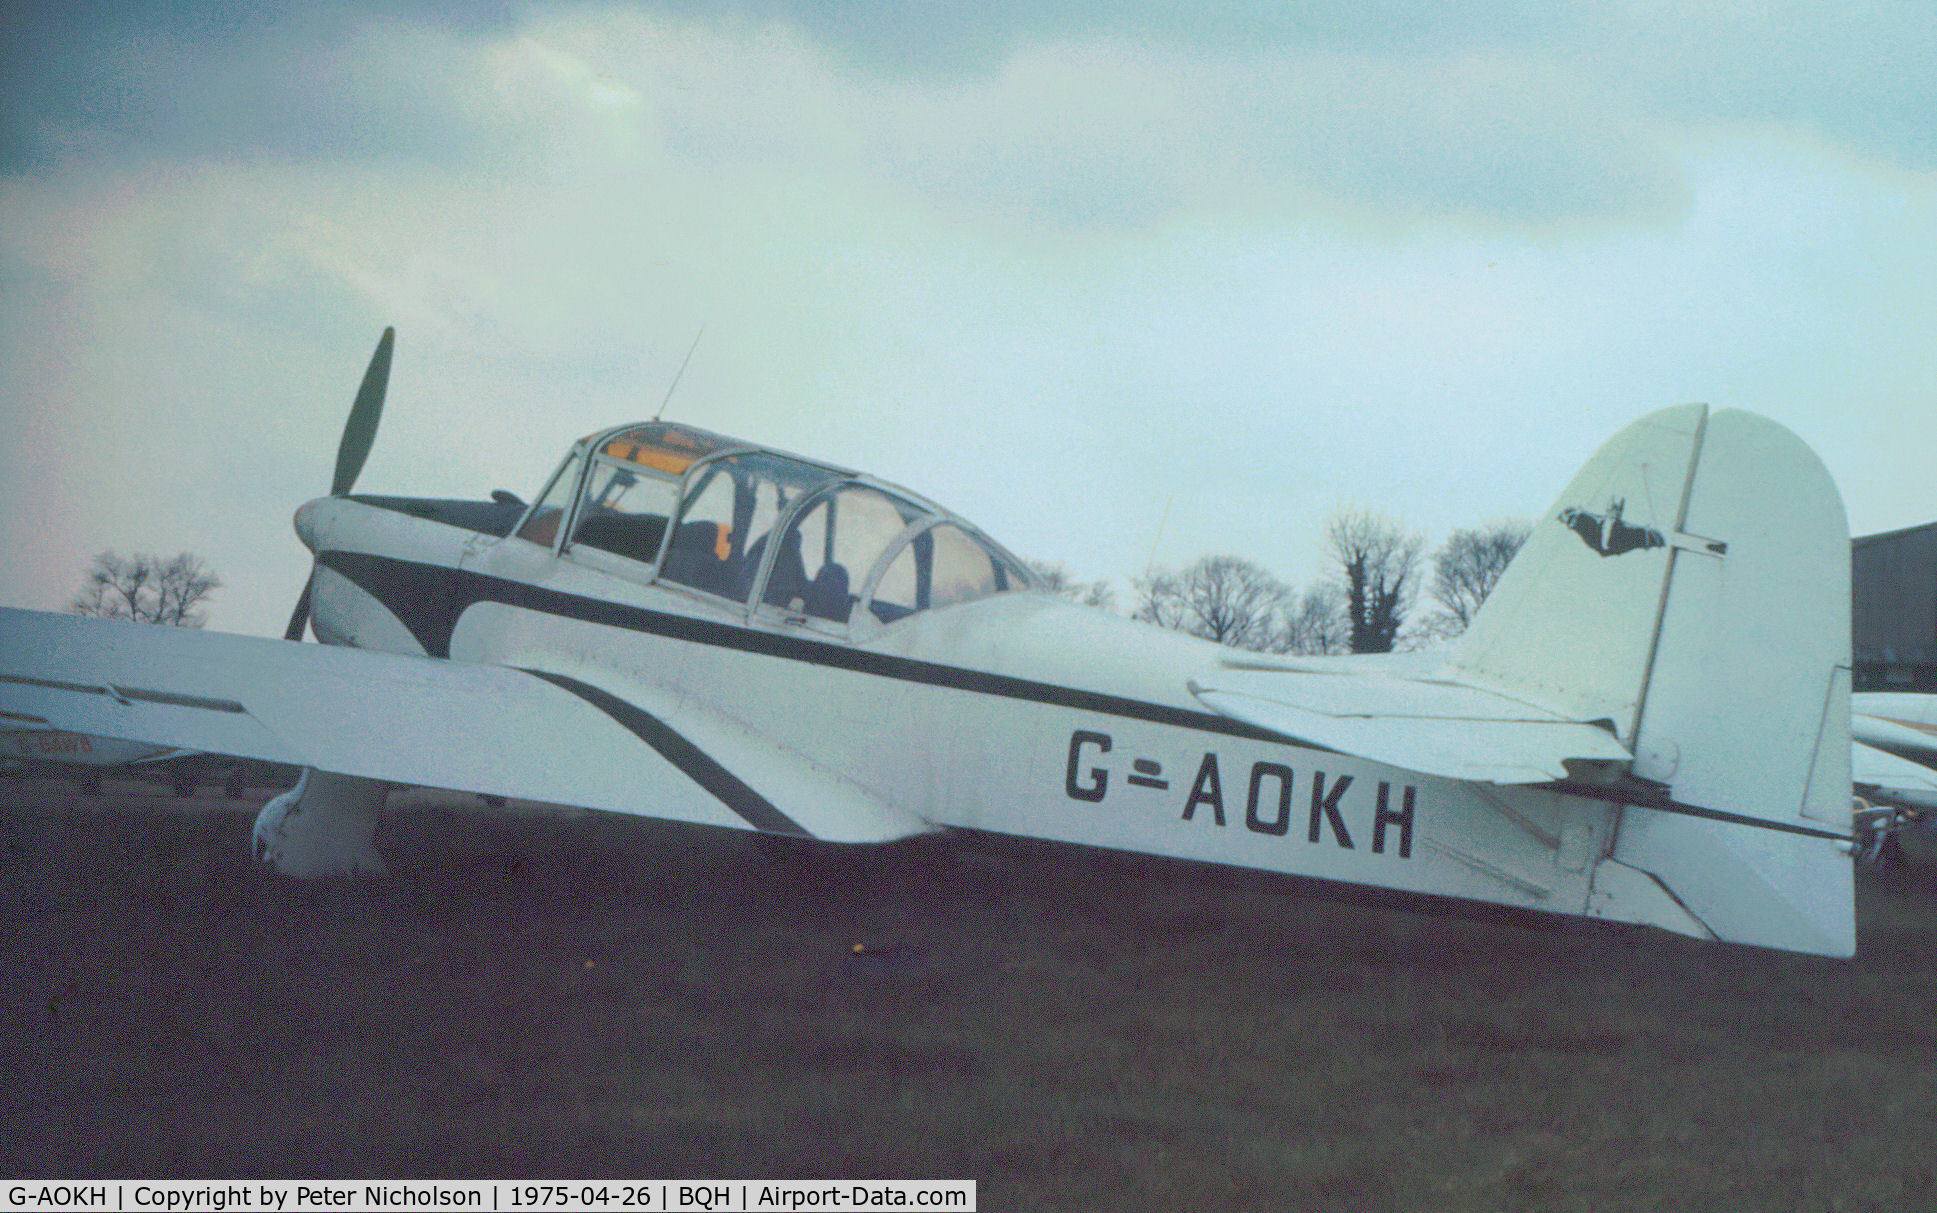 G-AOKH, 1948 Percival P40 Prentice T.1 C/N PAC-212, Percival Prentice 1 as seen at Biggin Hill in April 1975.